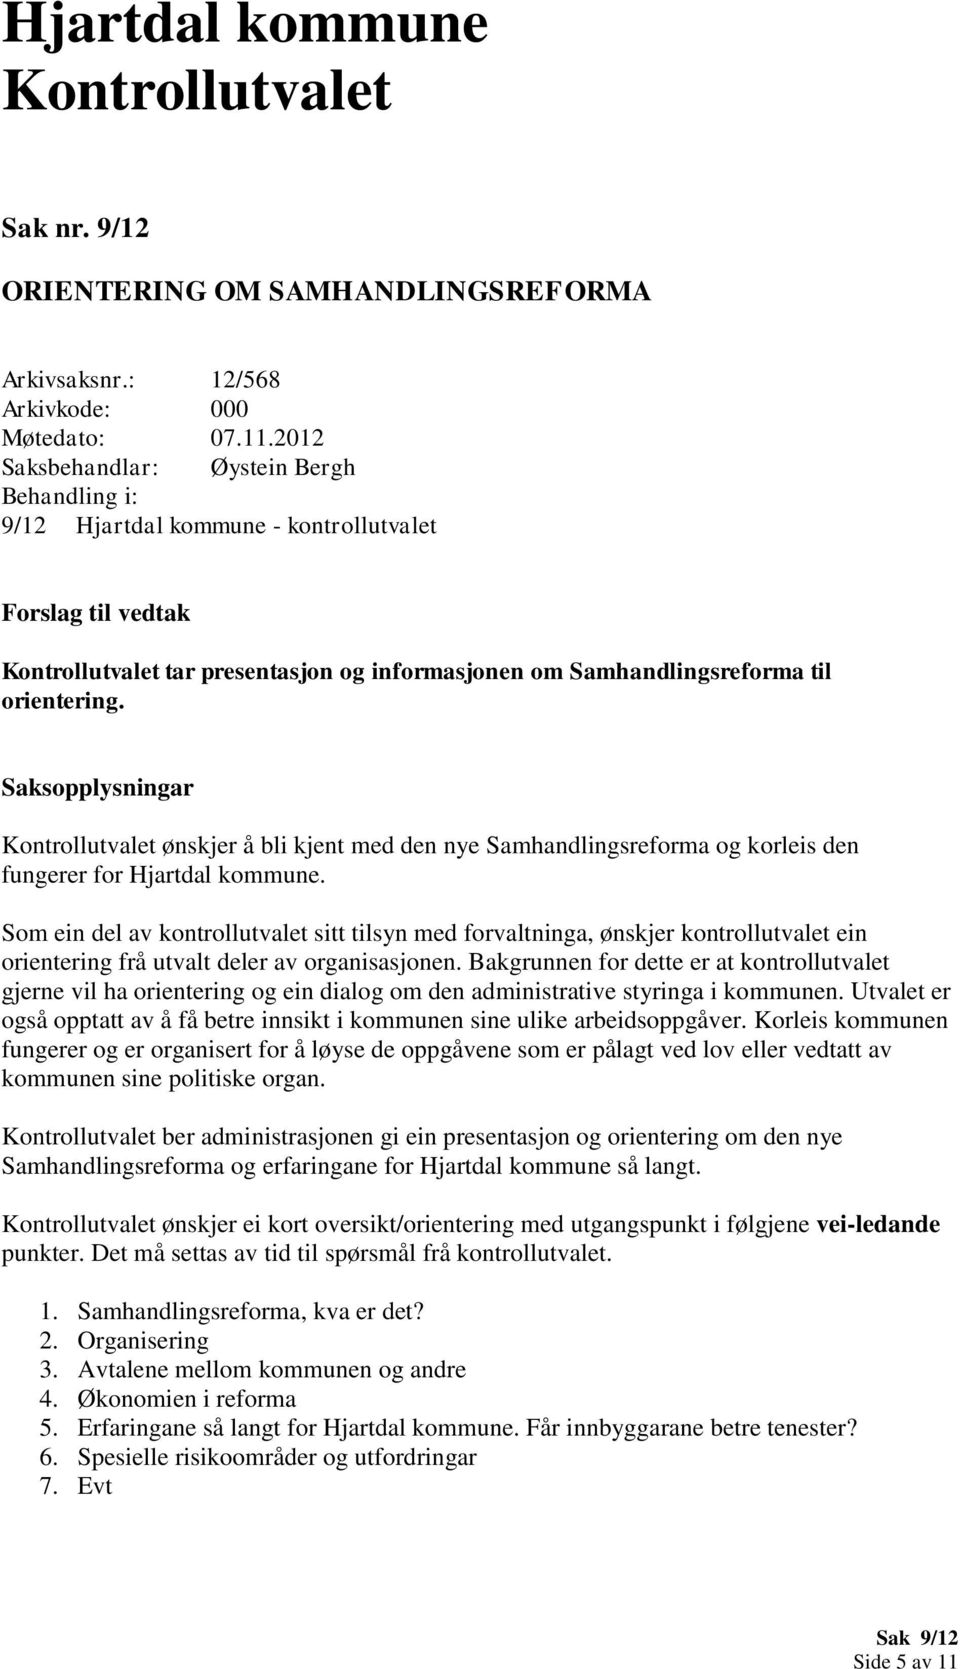 Saksopplysningar ønskjer å bli kjent med den nye Samhandlingsreforma og korleis den fungerer for Hjartdal kommune.